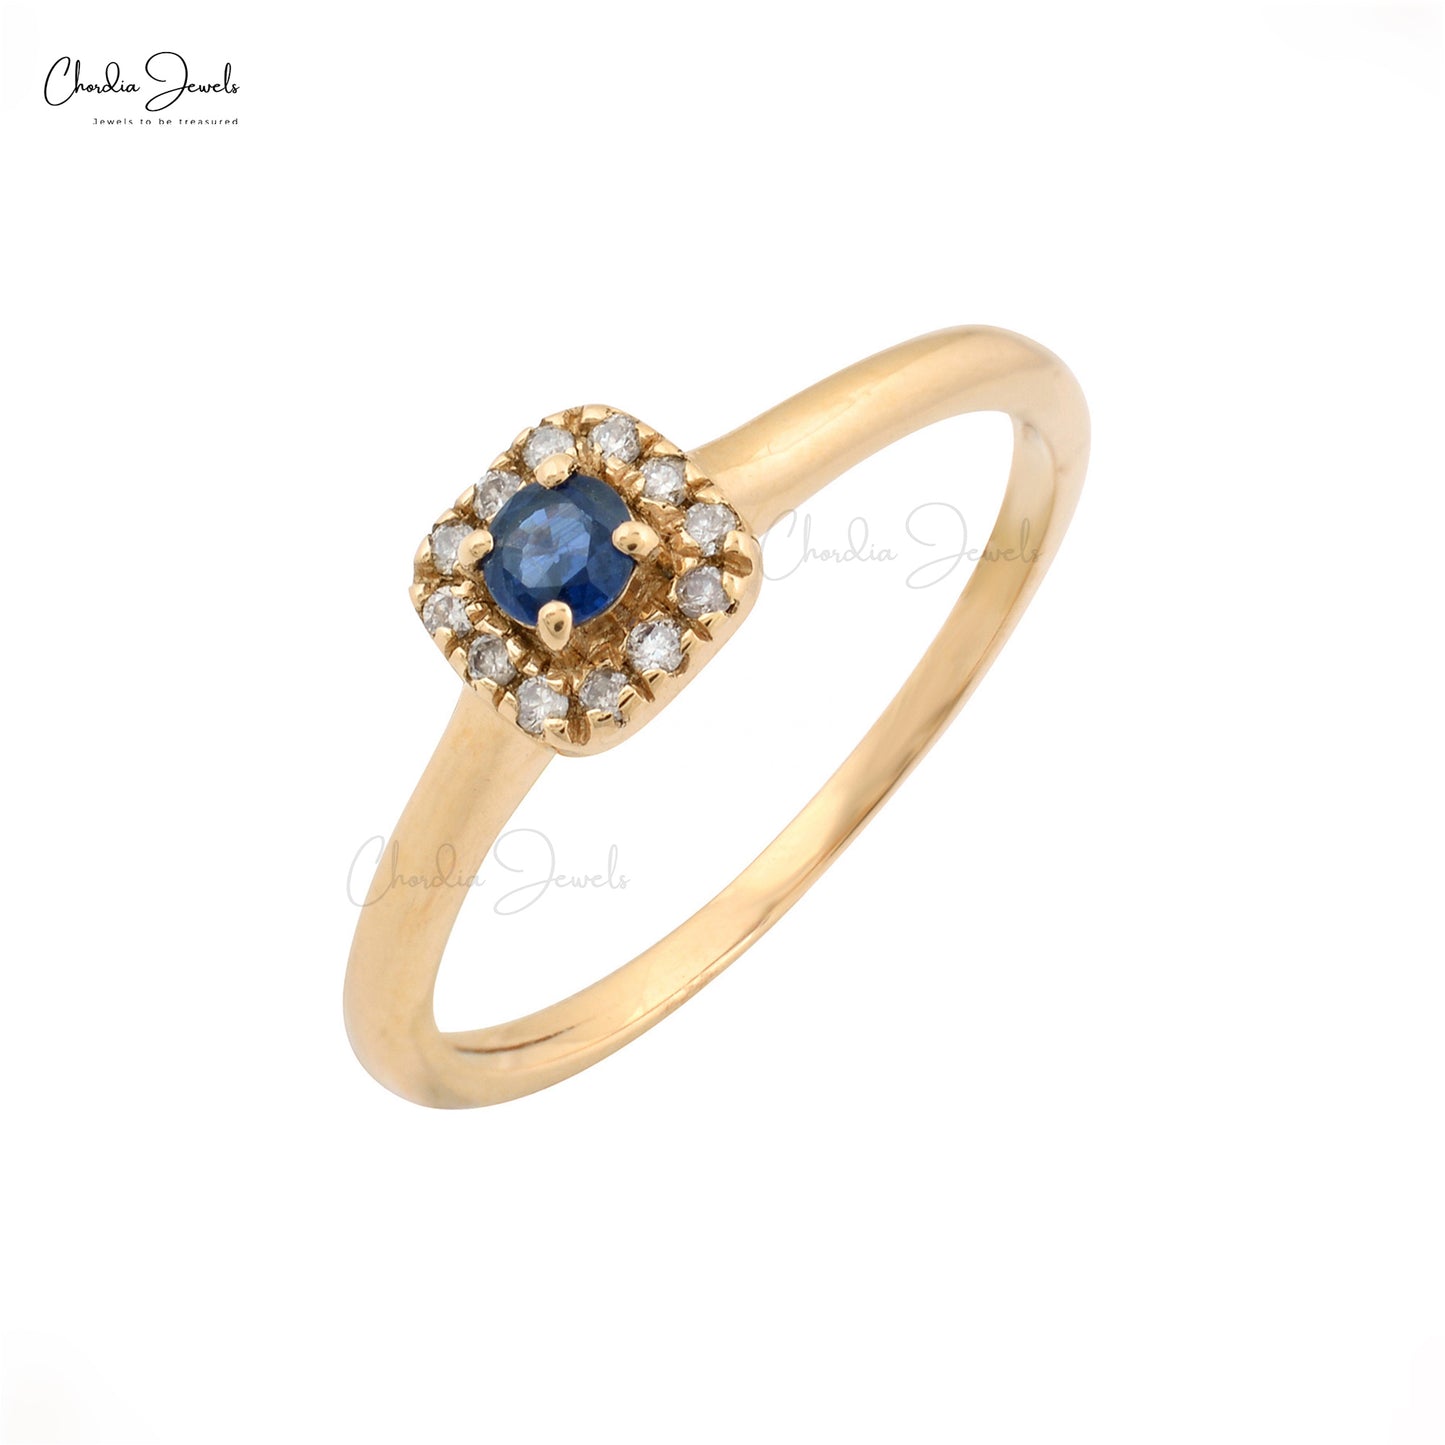 Oval Sapphire Diamond ring